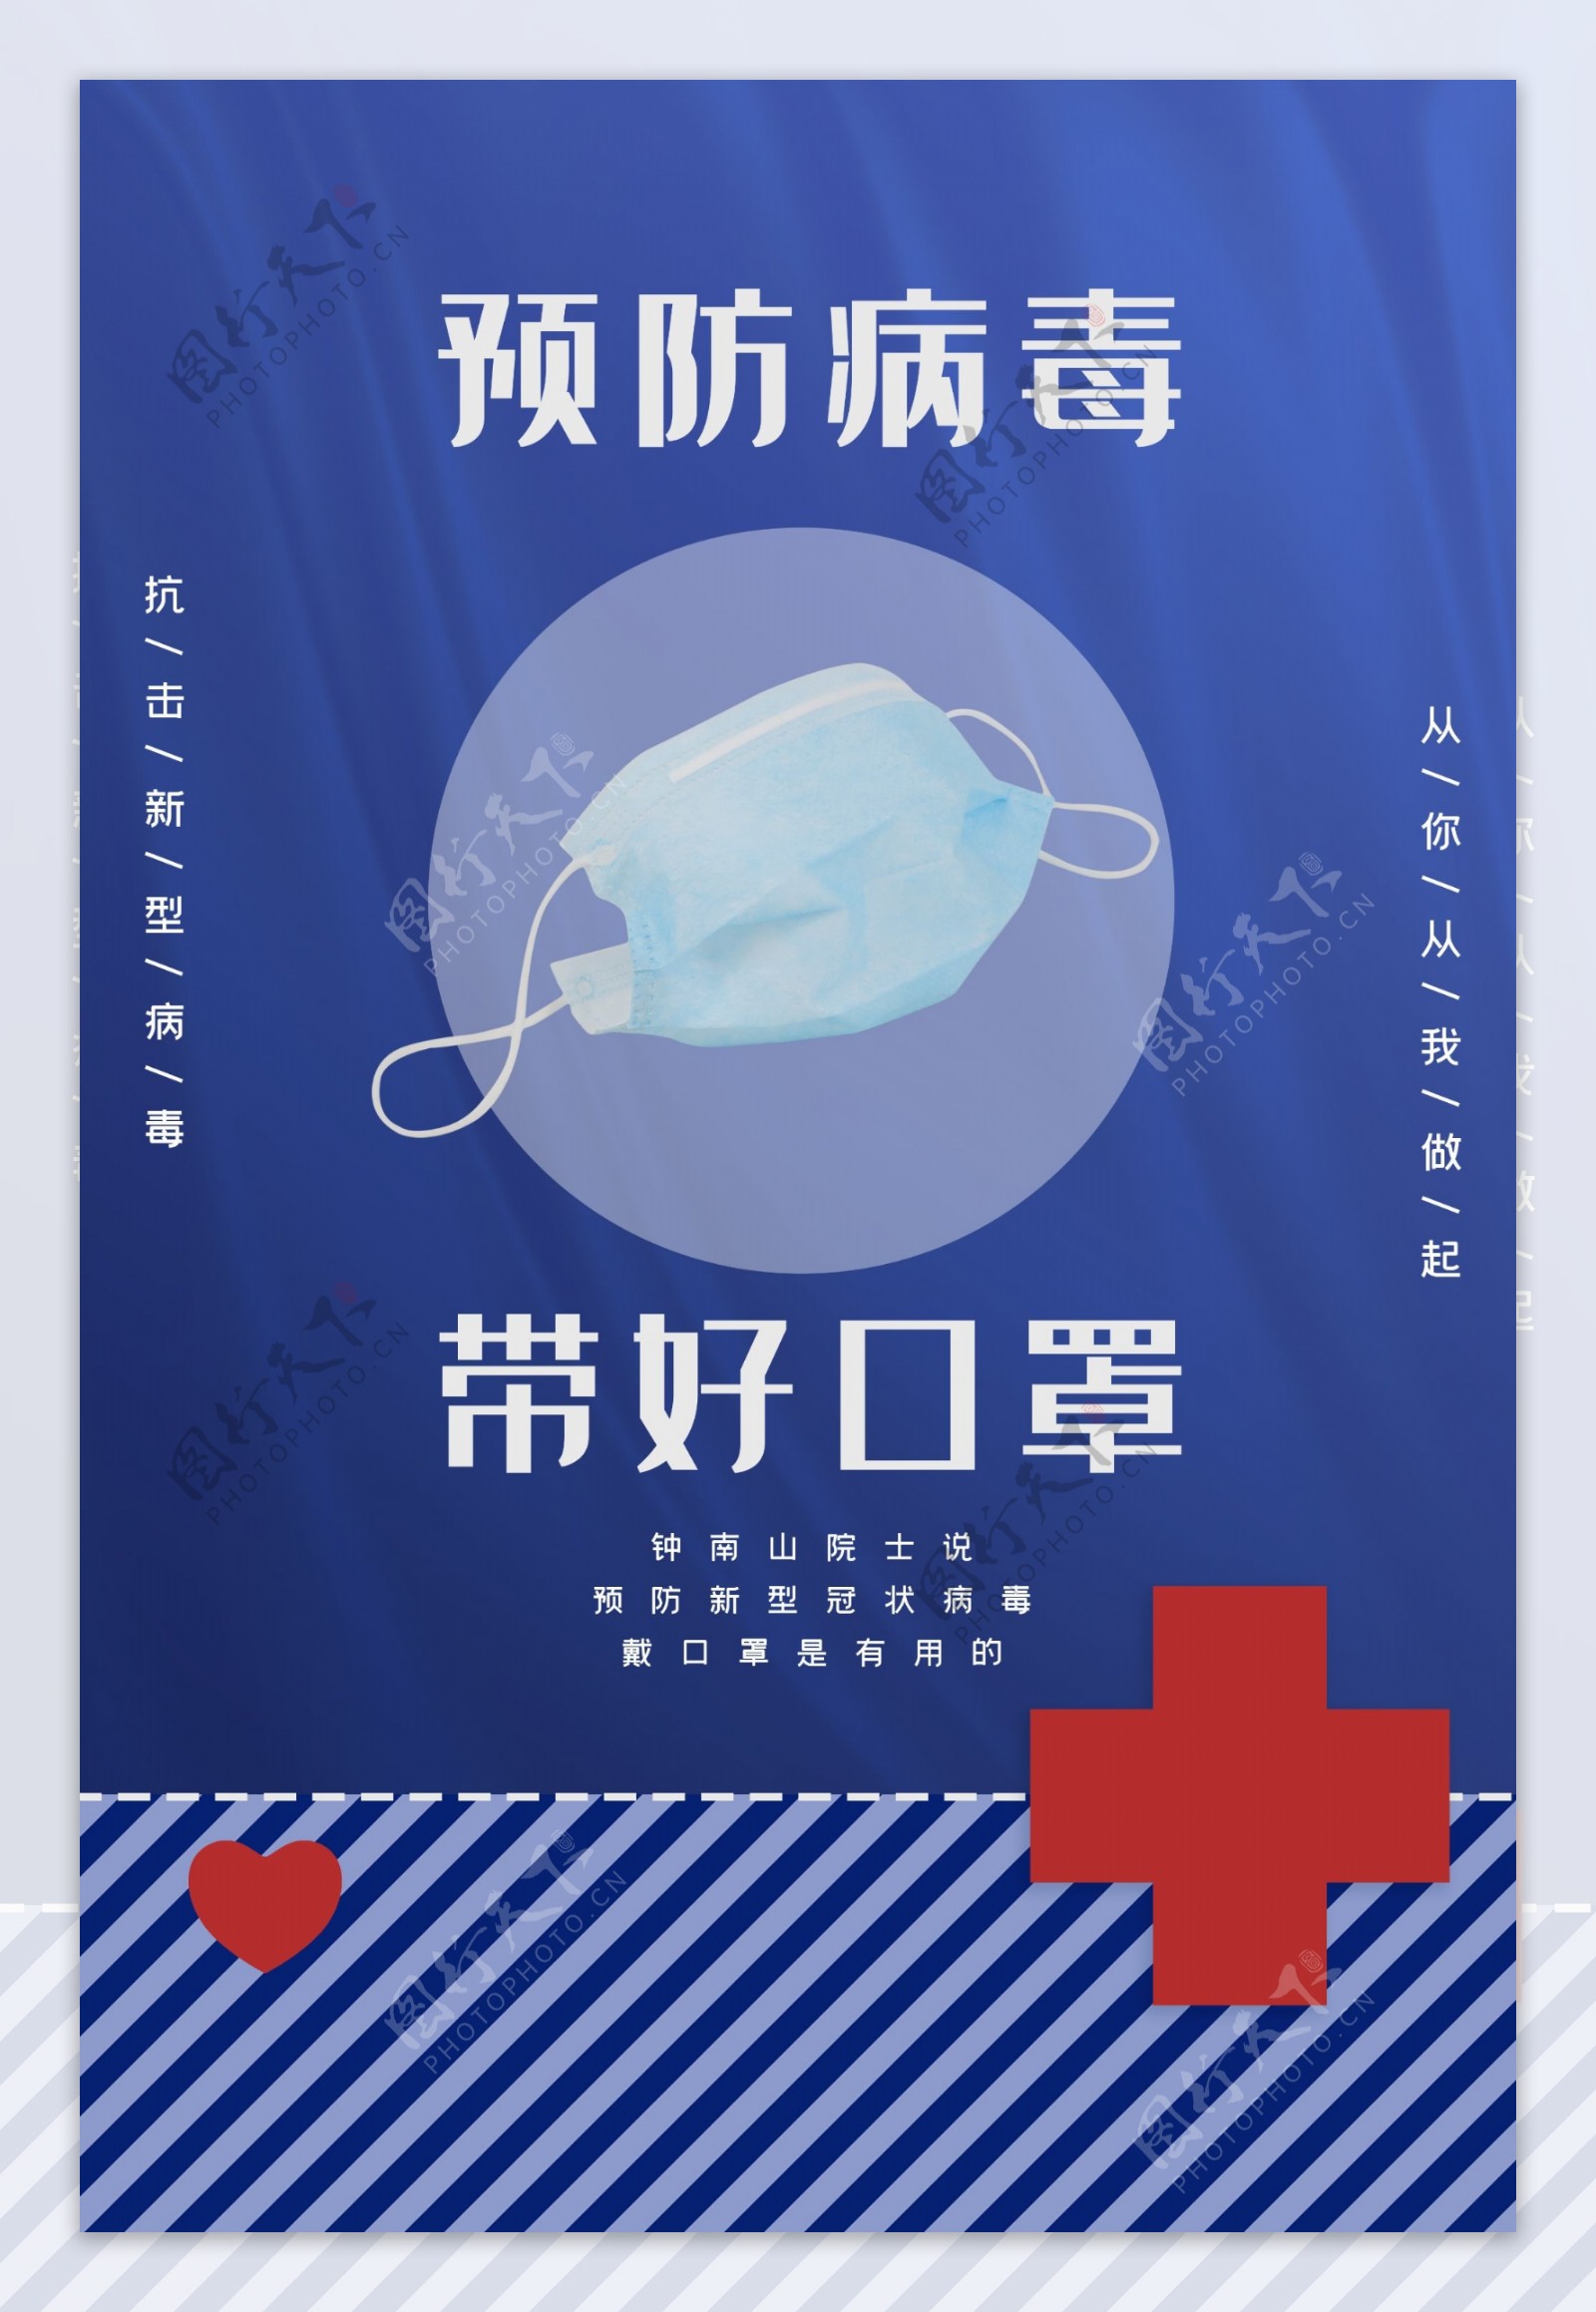 疫情预防公益海报